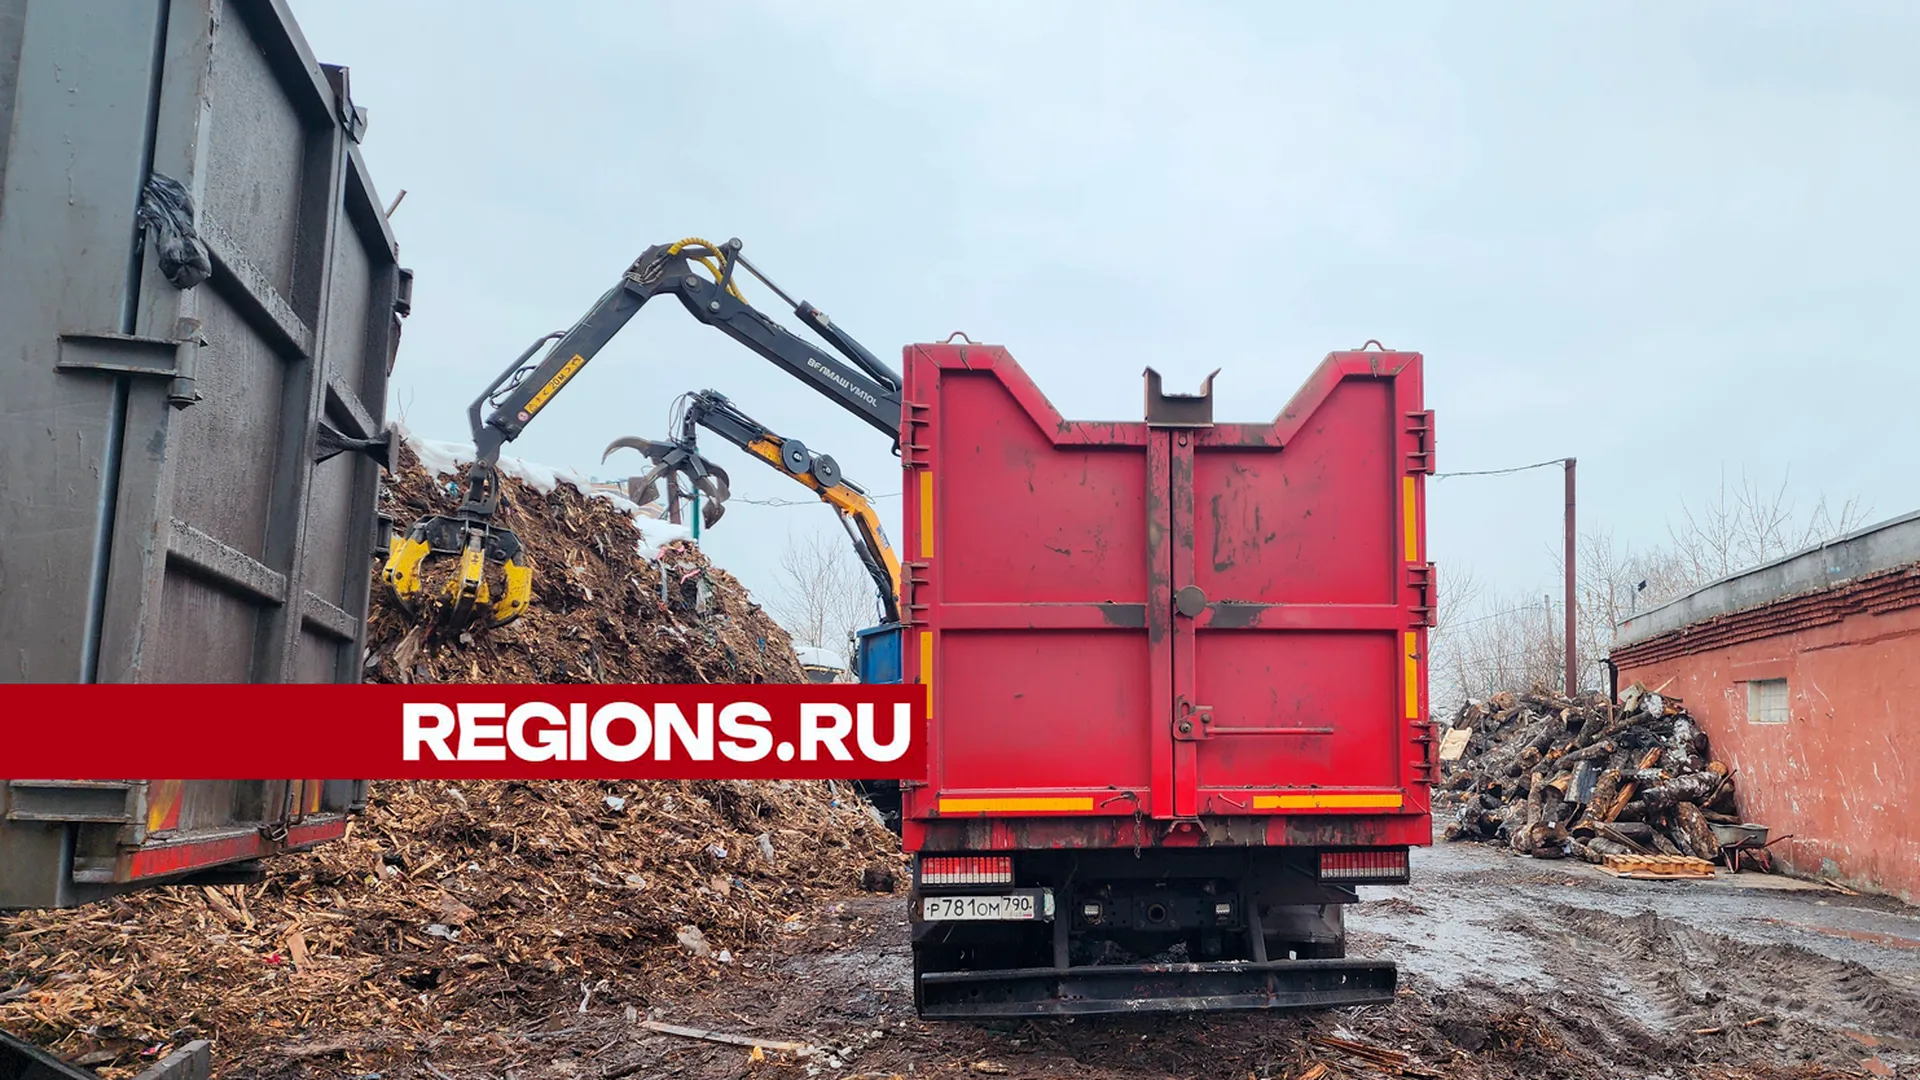 Перед сезоном благоустройства в Городском округе Пушкинский освобождают площади для хранения отходов